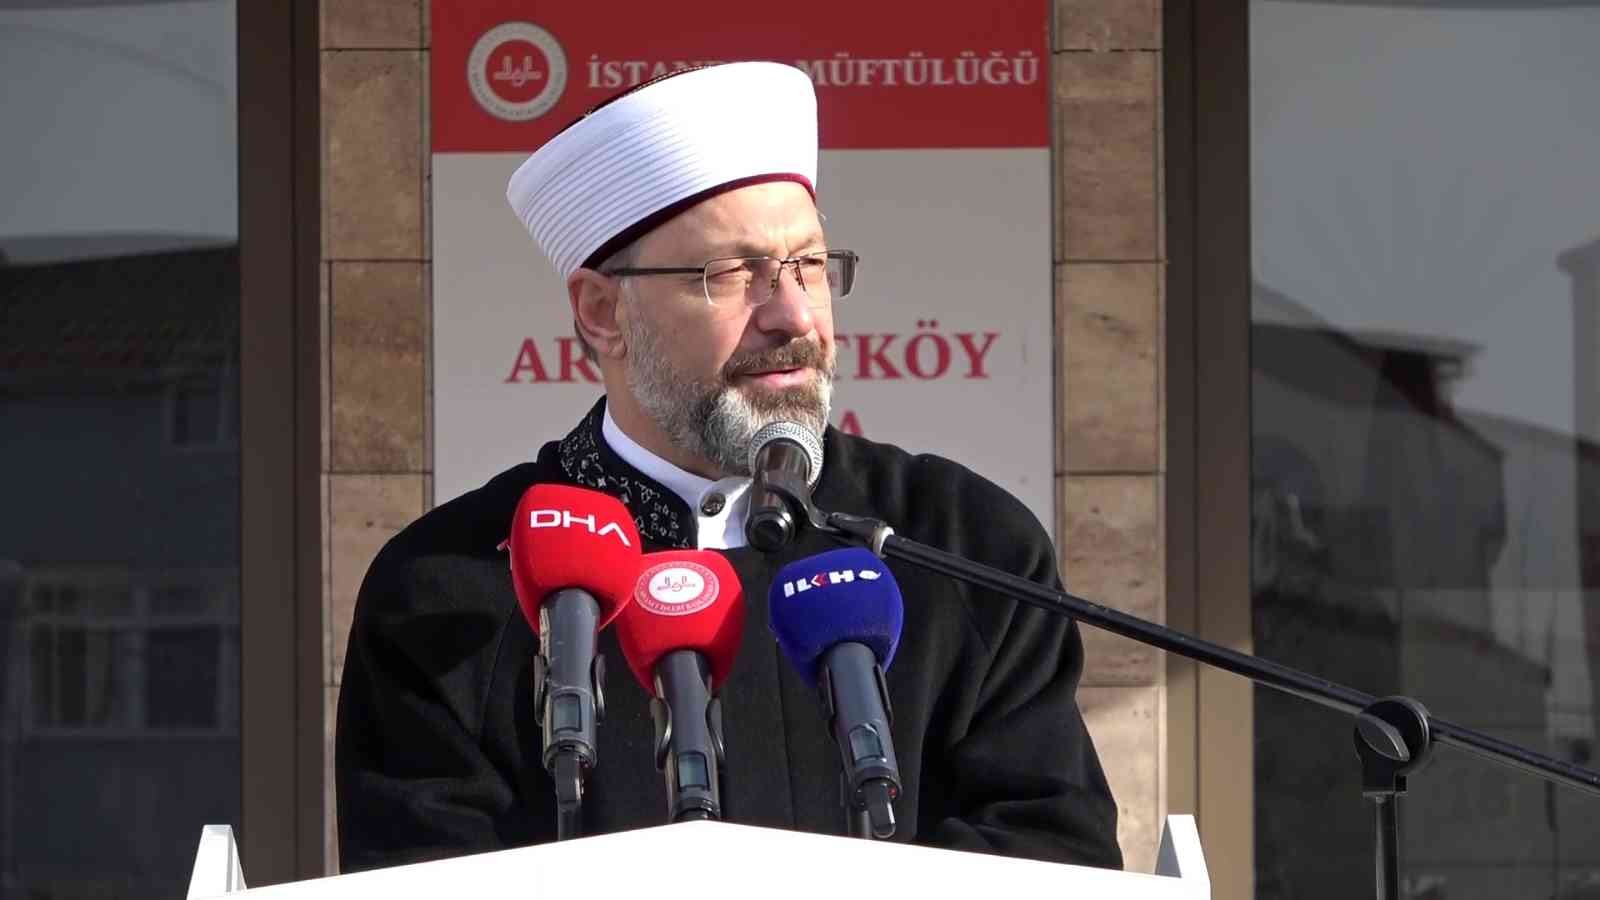 Diyanet İşleri Başkanı Ali Erbaş Arnavutköy’de Kur’an Kursu açılışına katıldı #istanbul